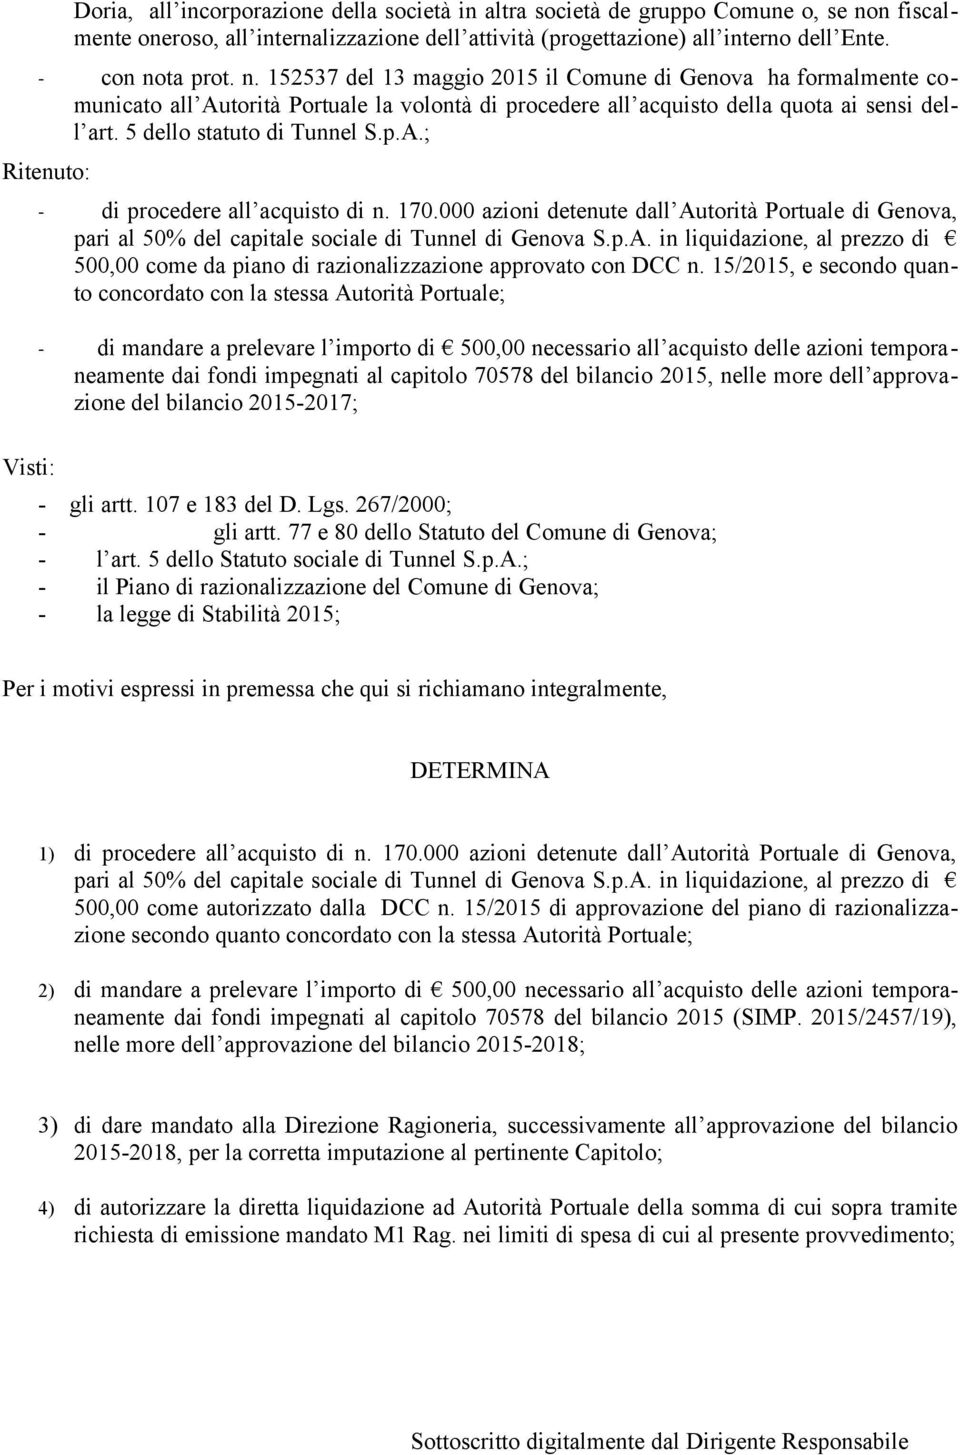 ta prot. n. 152537 del 13 maggio 2015 il Comune di Genova ha formalmente comunicato all Autorità Portuale la volontà di procedere all acquisto della quota ai sensi dell art.